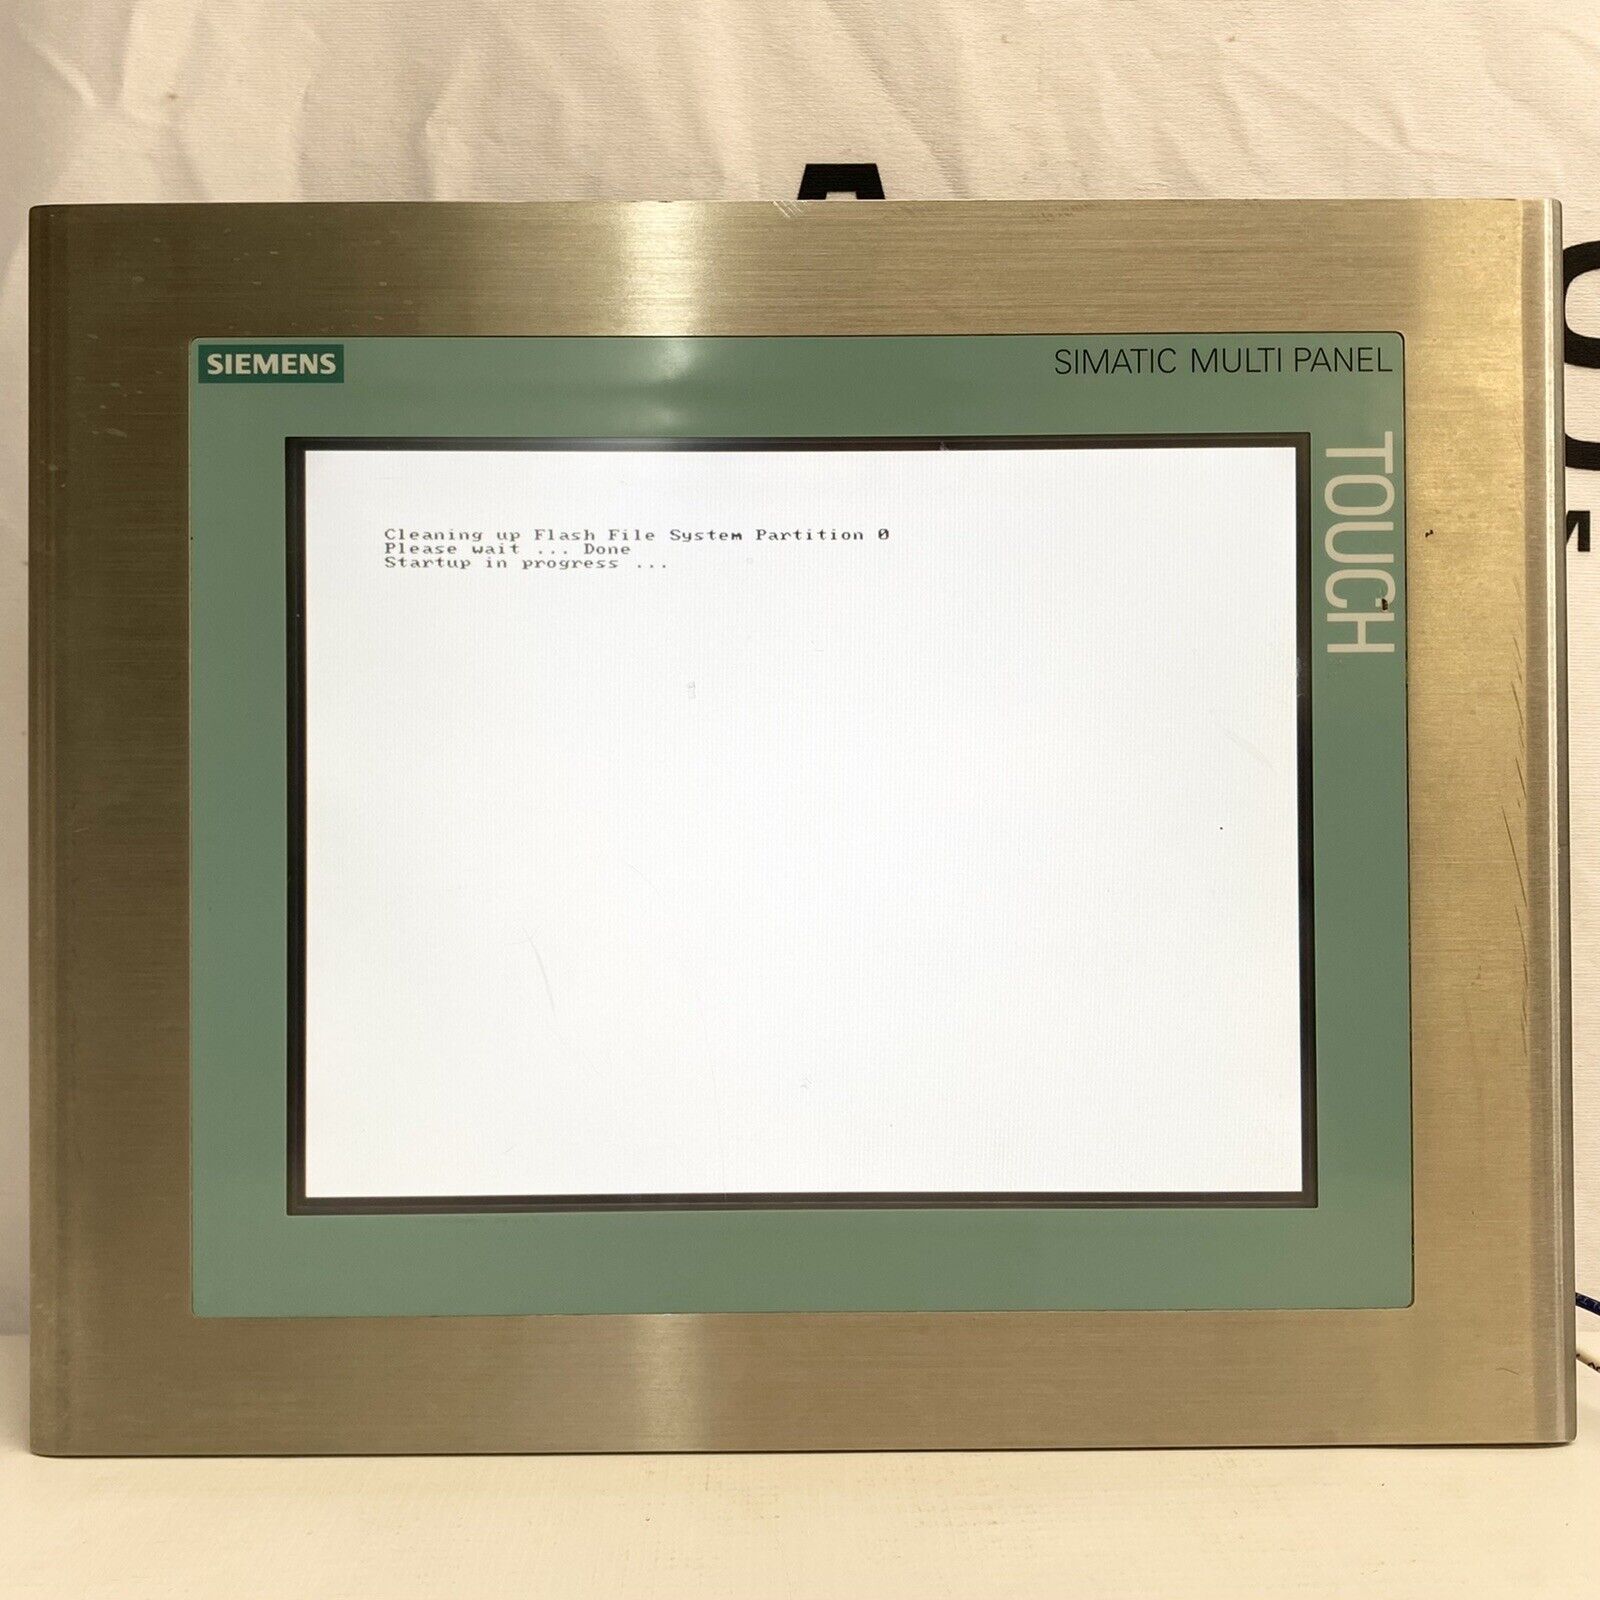 Siemens 6AV6 643-0ED01-2AX0 MP277 10” Touch INOX Screen HMI Terminal USA Seller 